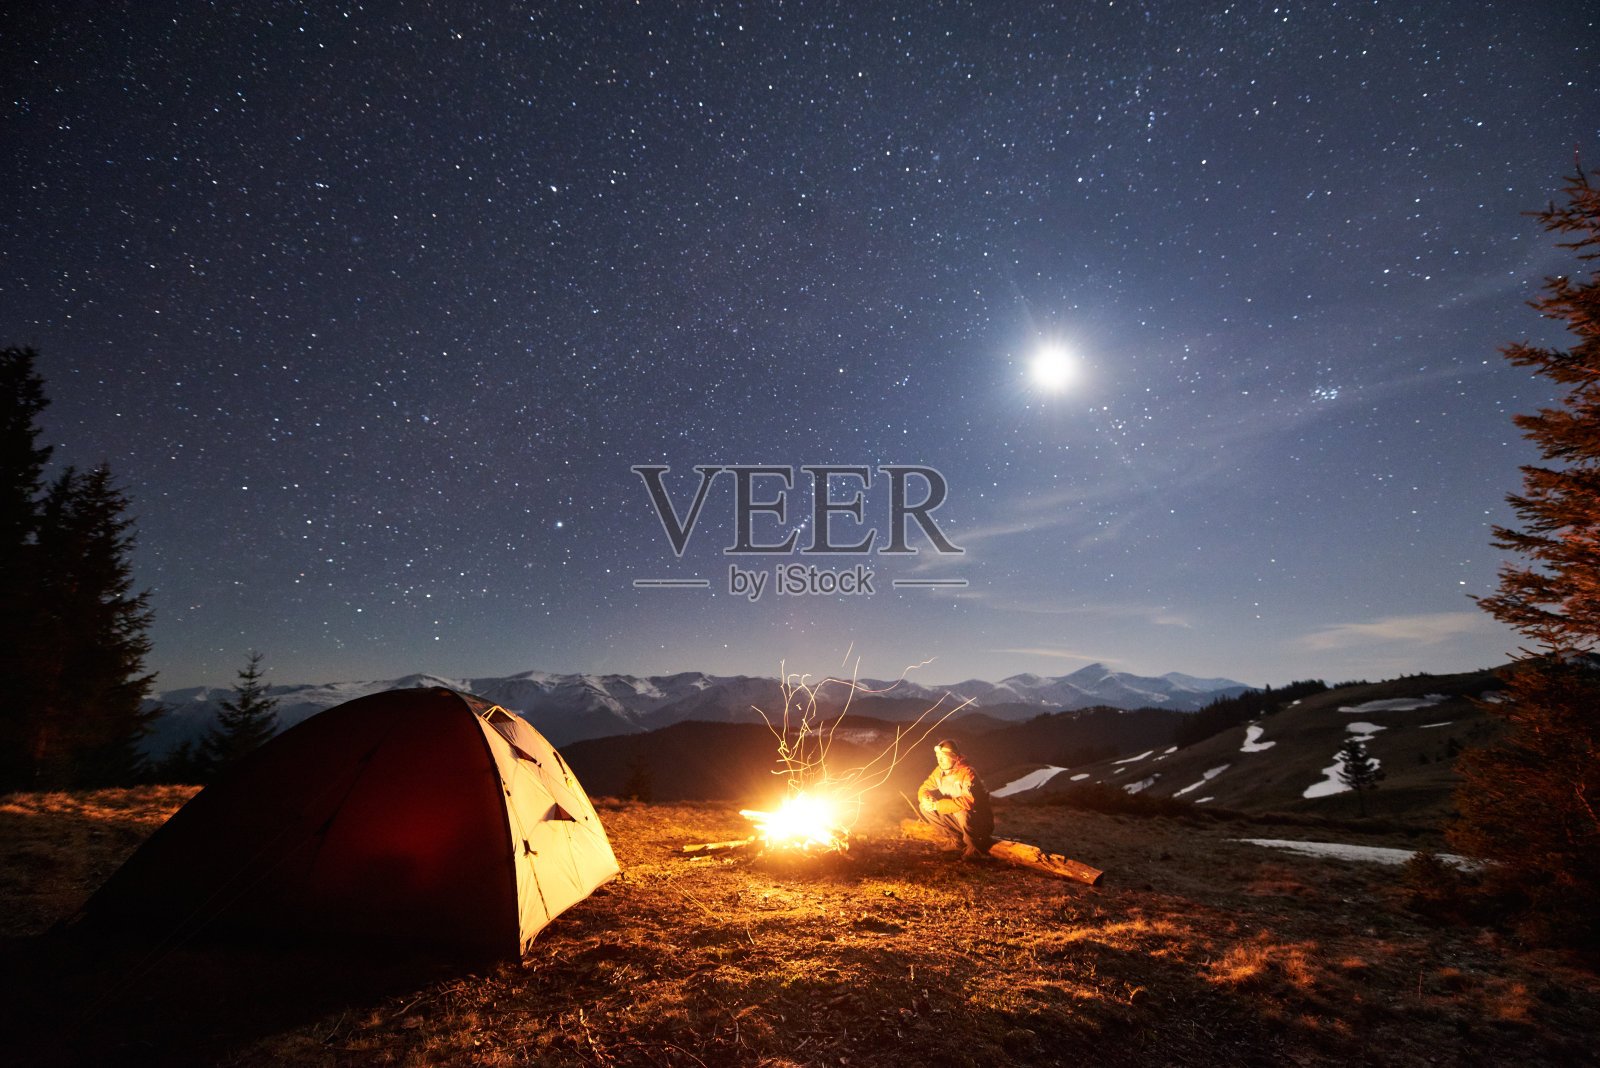 男性徒步旅行者晚上在森林附近的营地休息。在满是星星和月亮的美丽夜空下，坐在篝火和帐篷旁的人，在山上欣赏夜景照片摄影图片